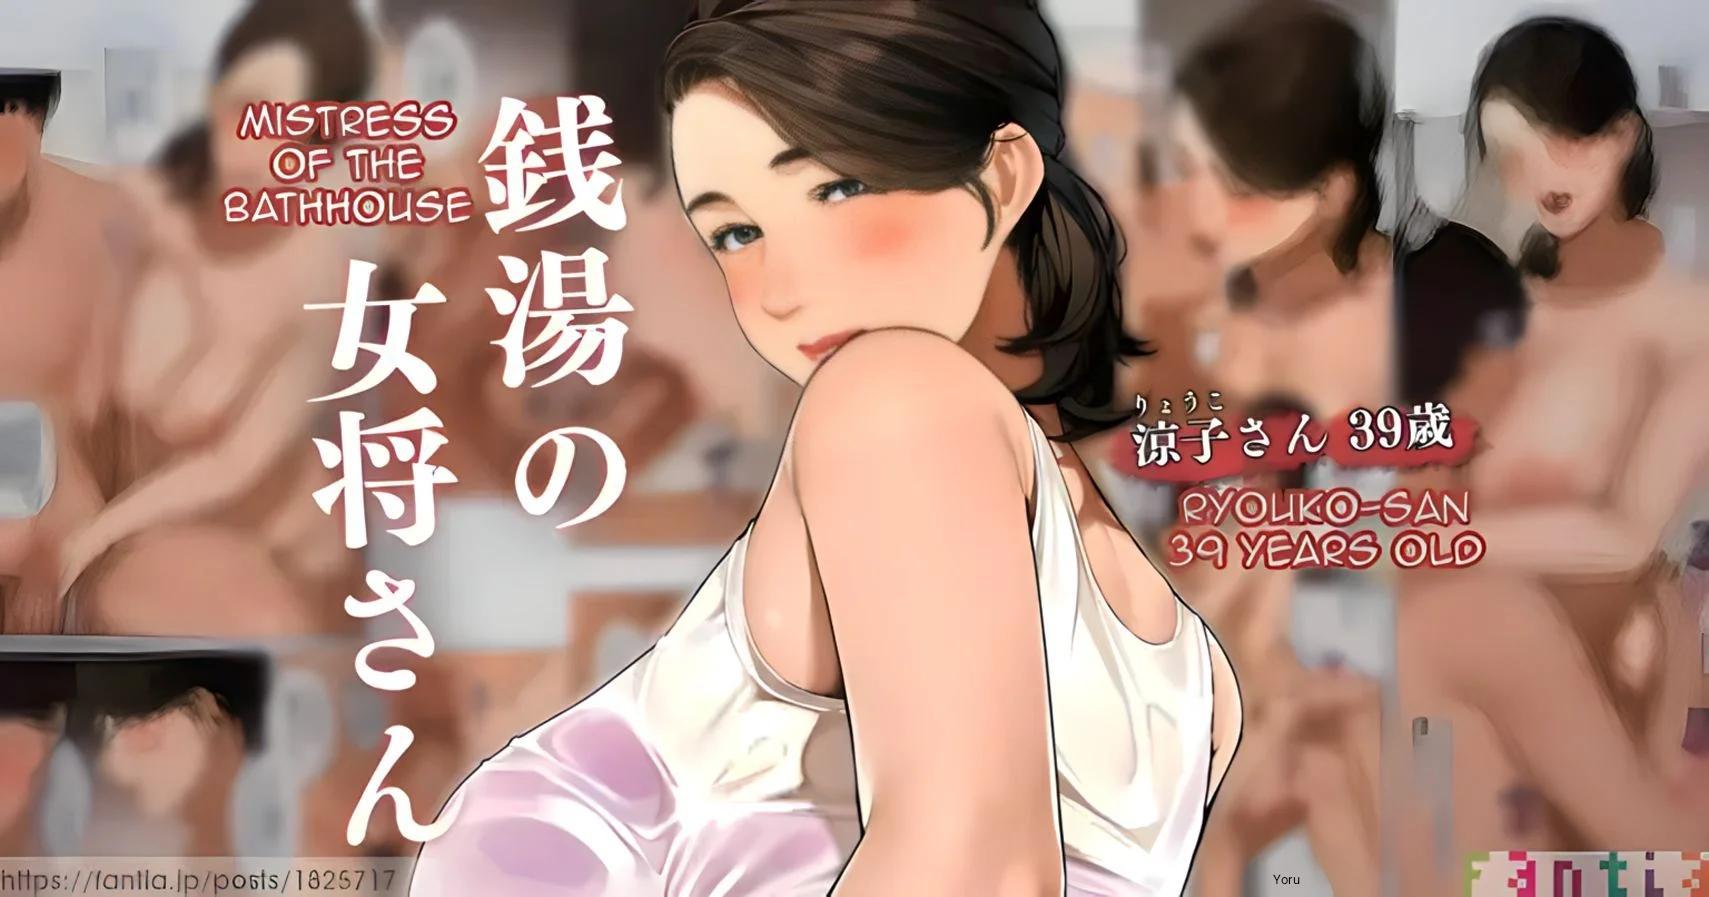 Sentou no Okami-san _ Ryouko-san 1 _ Mistress of the Bathhouse 1 - 0